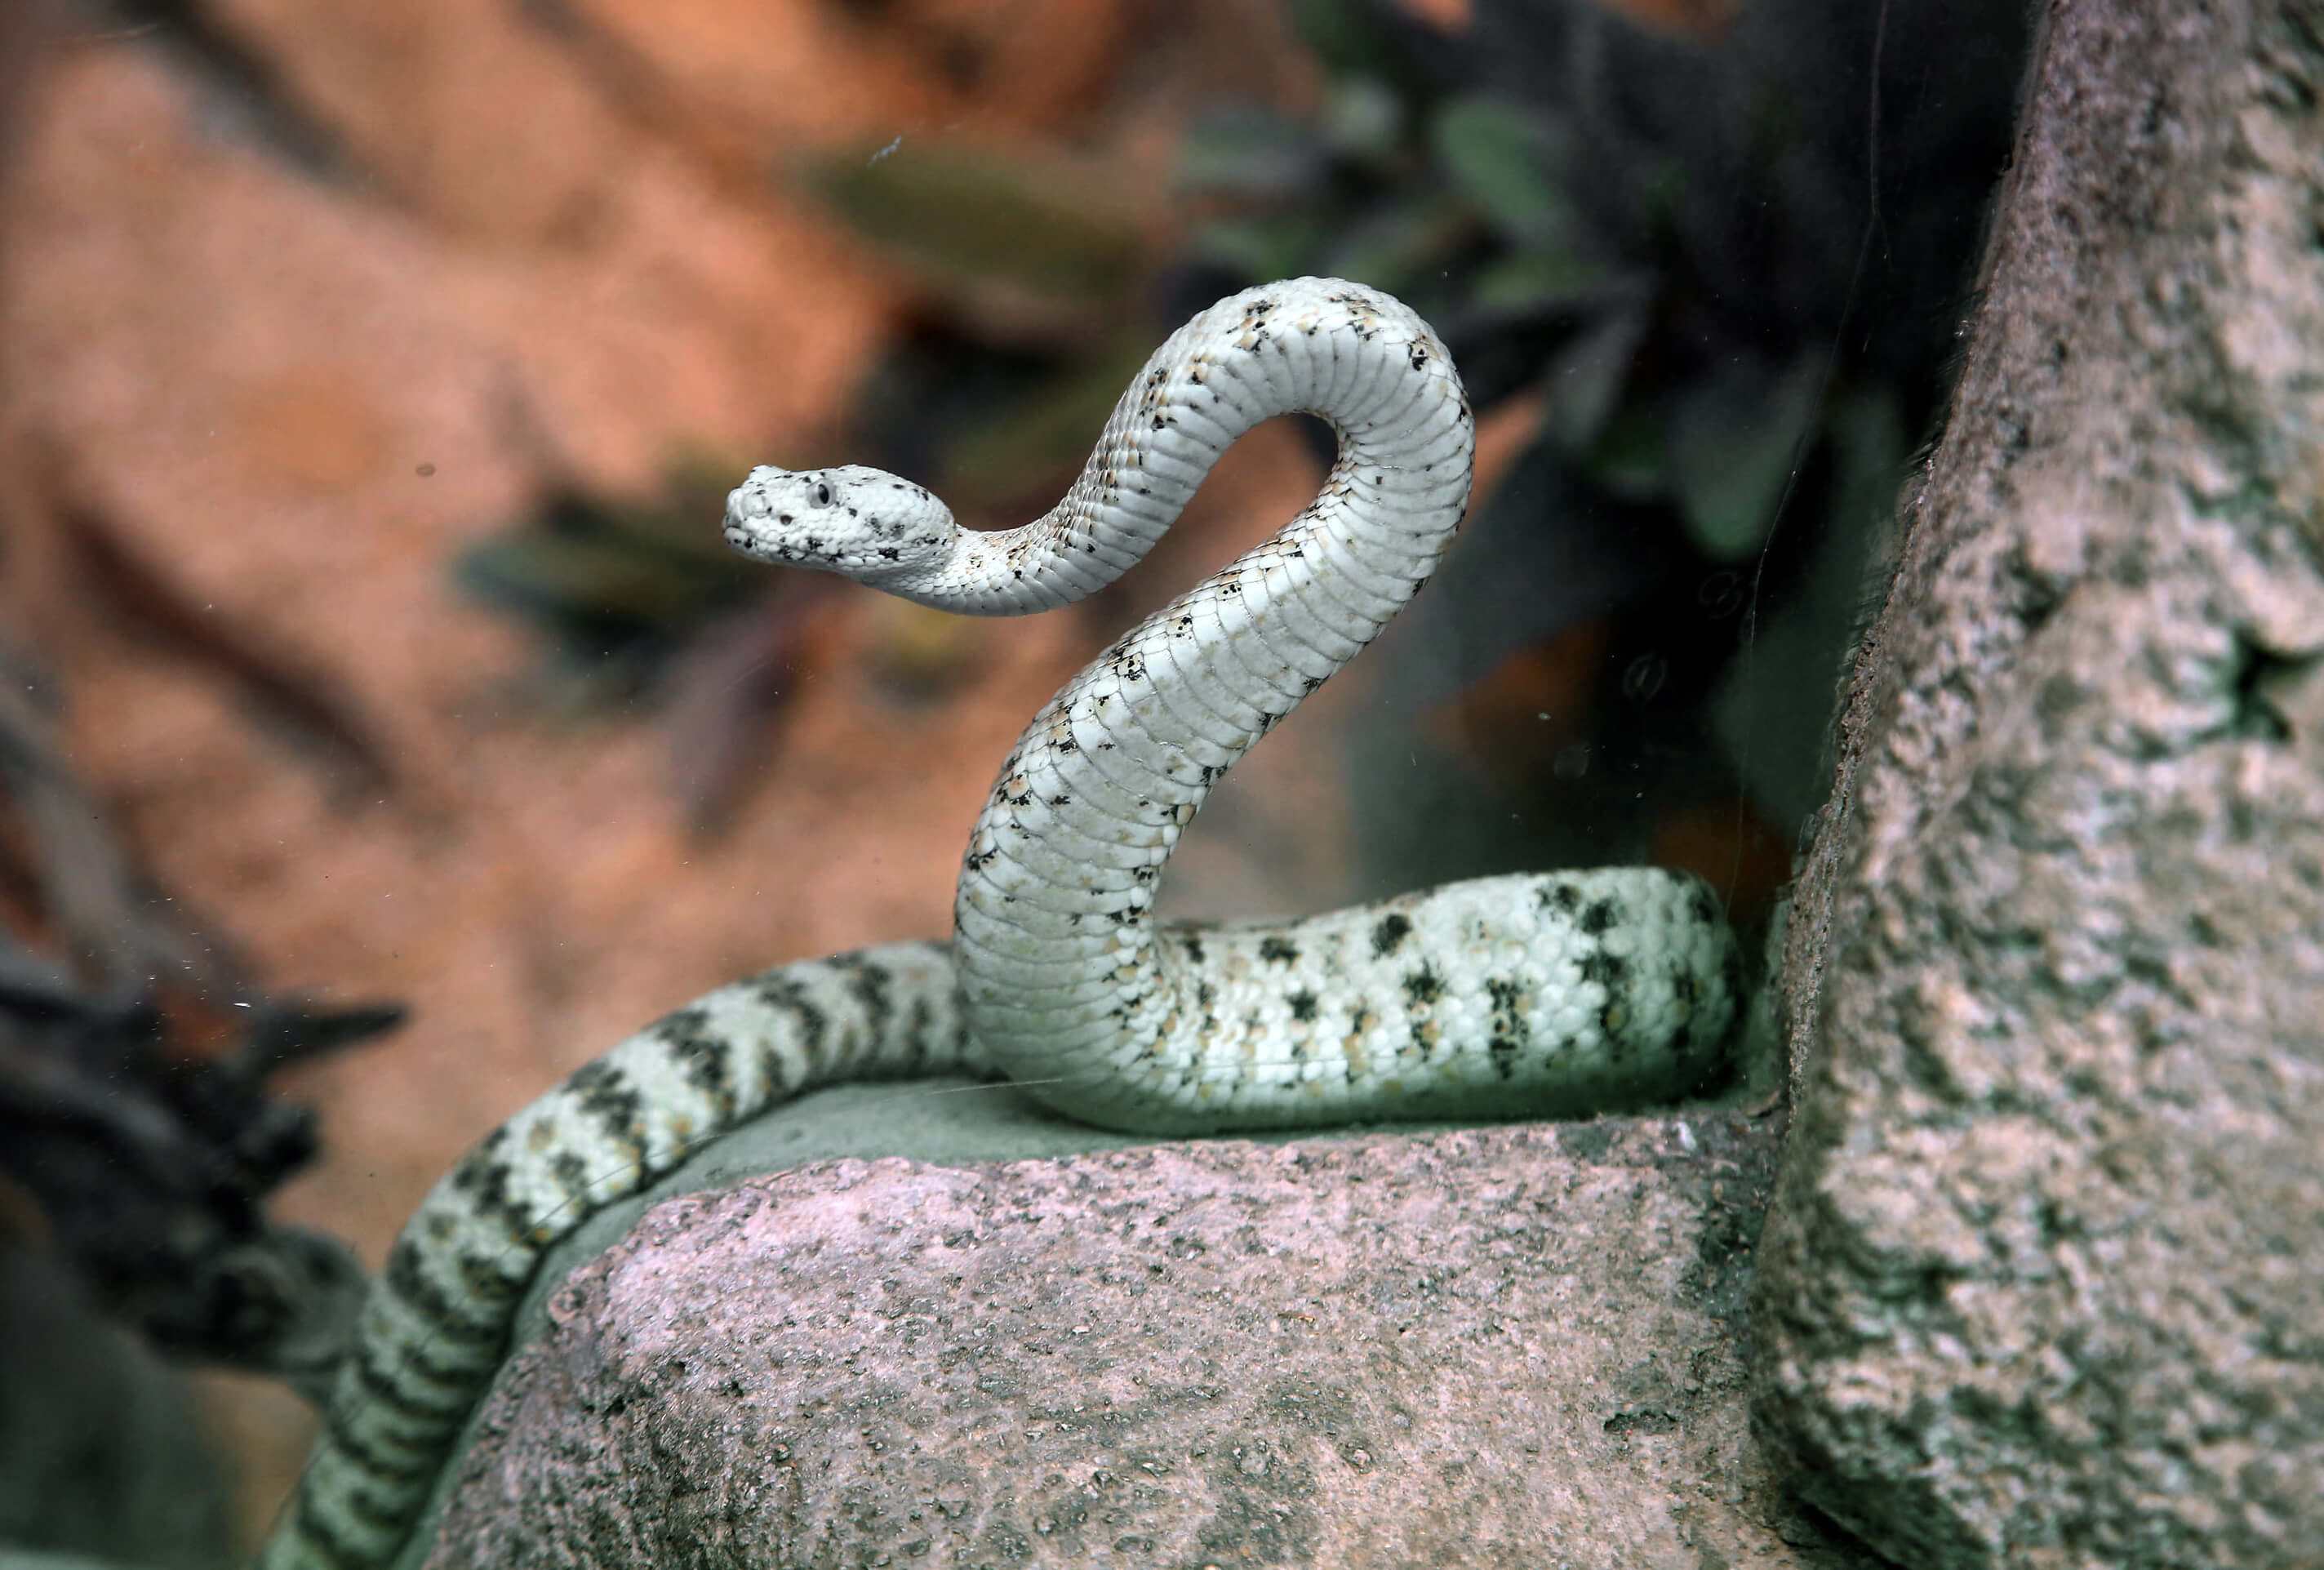 Serpientes causan más de 100 mil muertes cada año, dice OMS